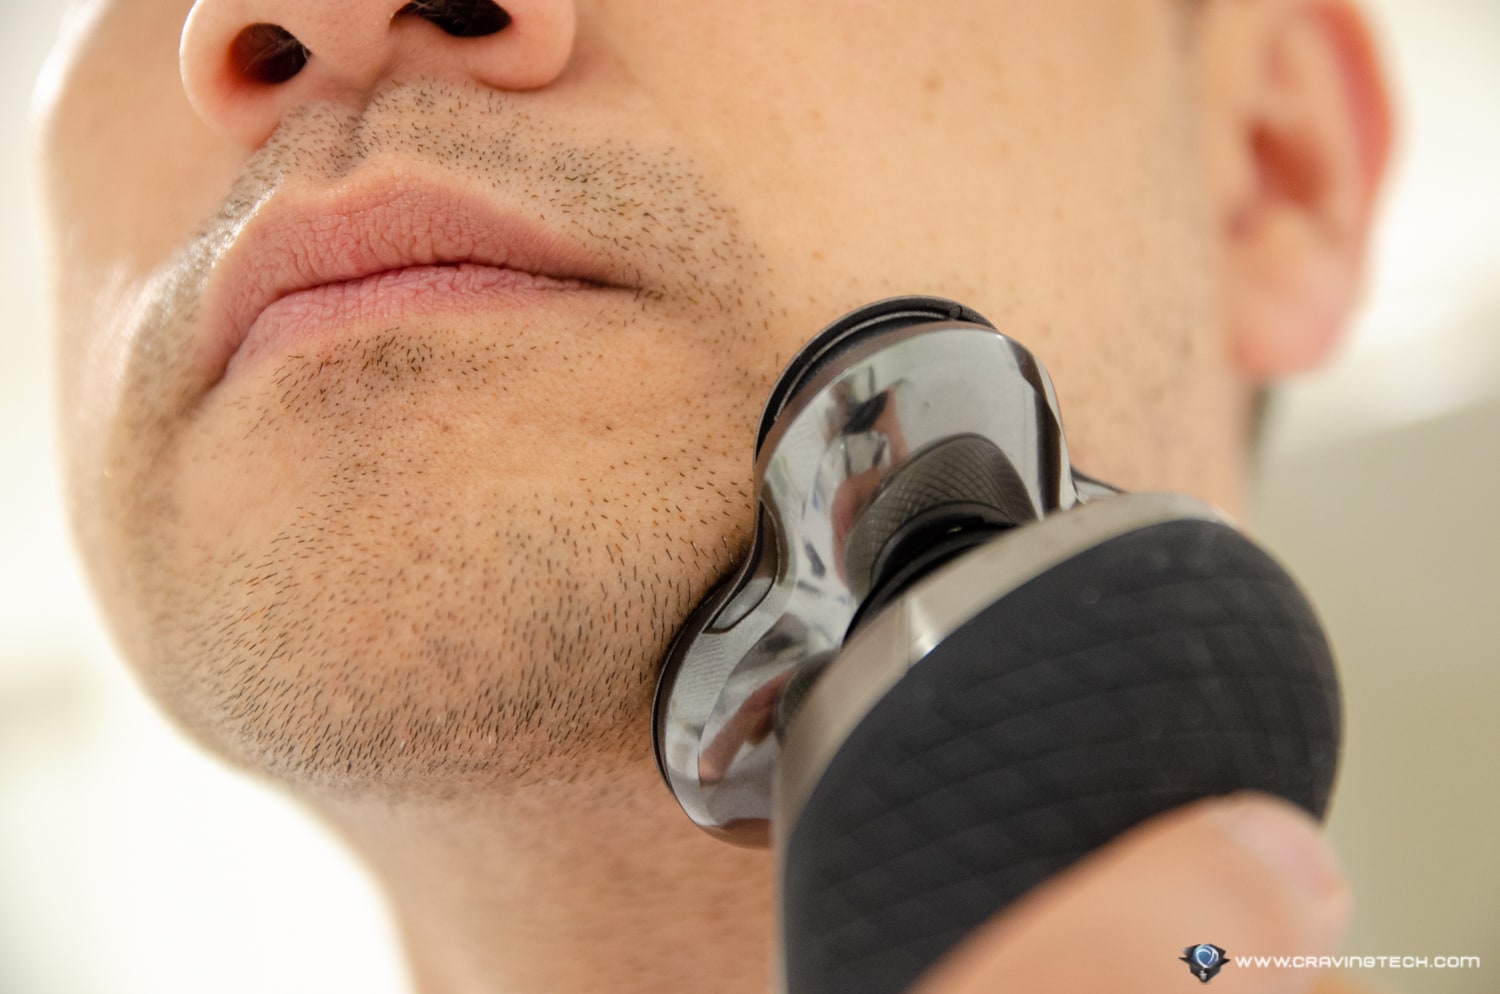 Philips S9000 Prestige Shaver - Shaving Experience